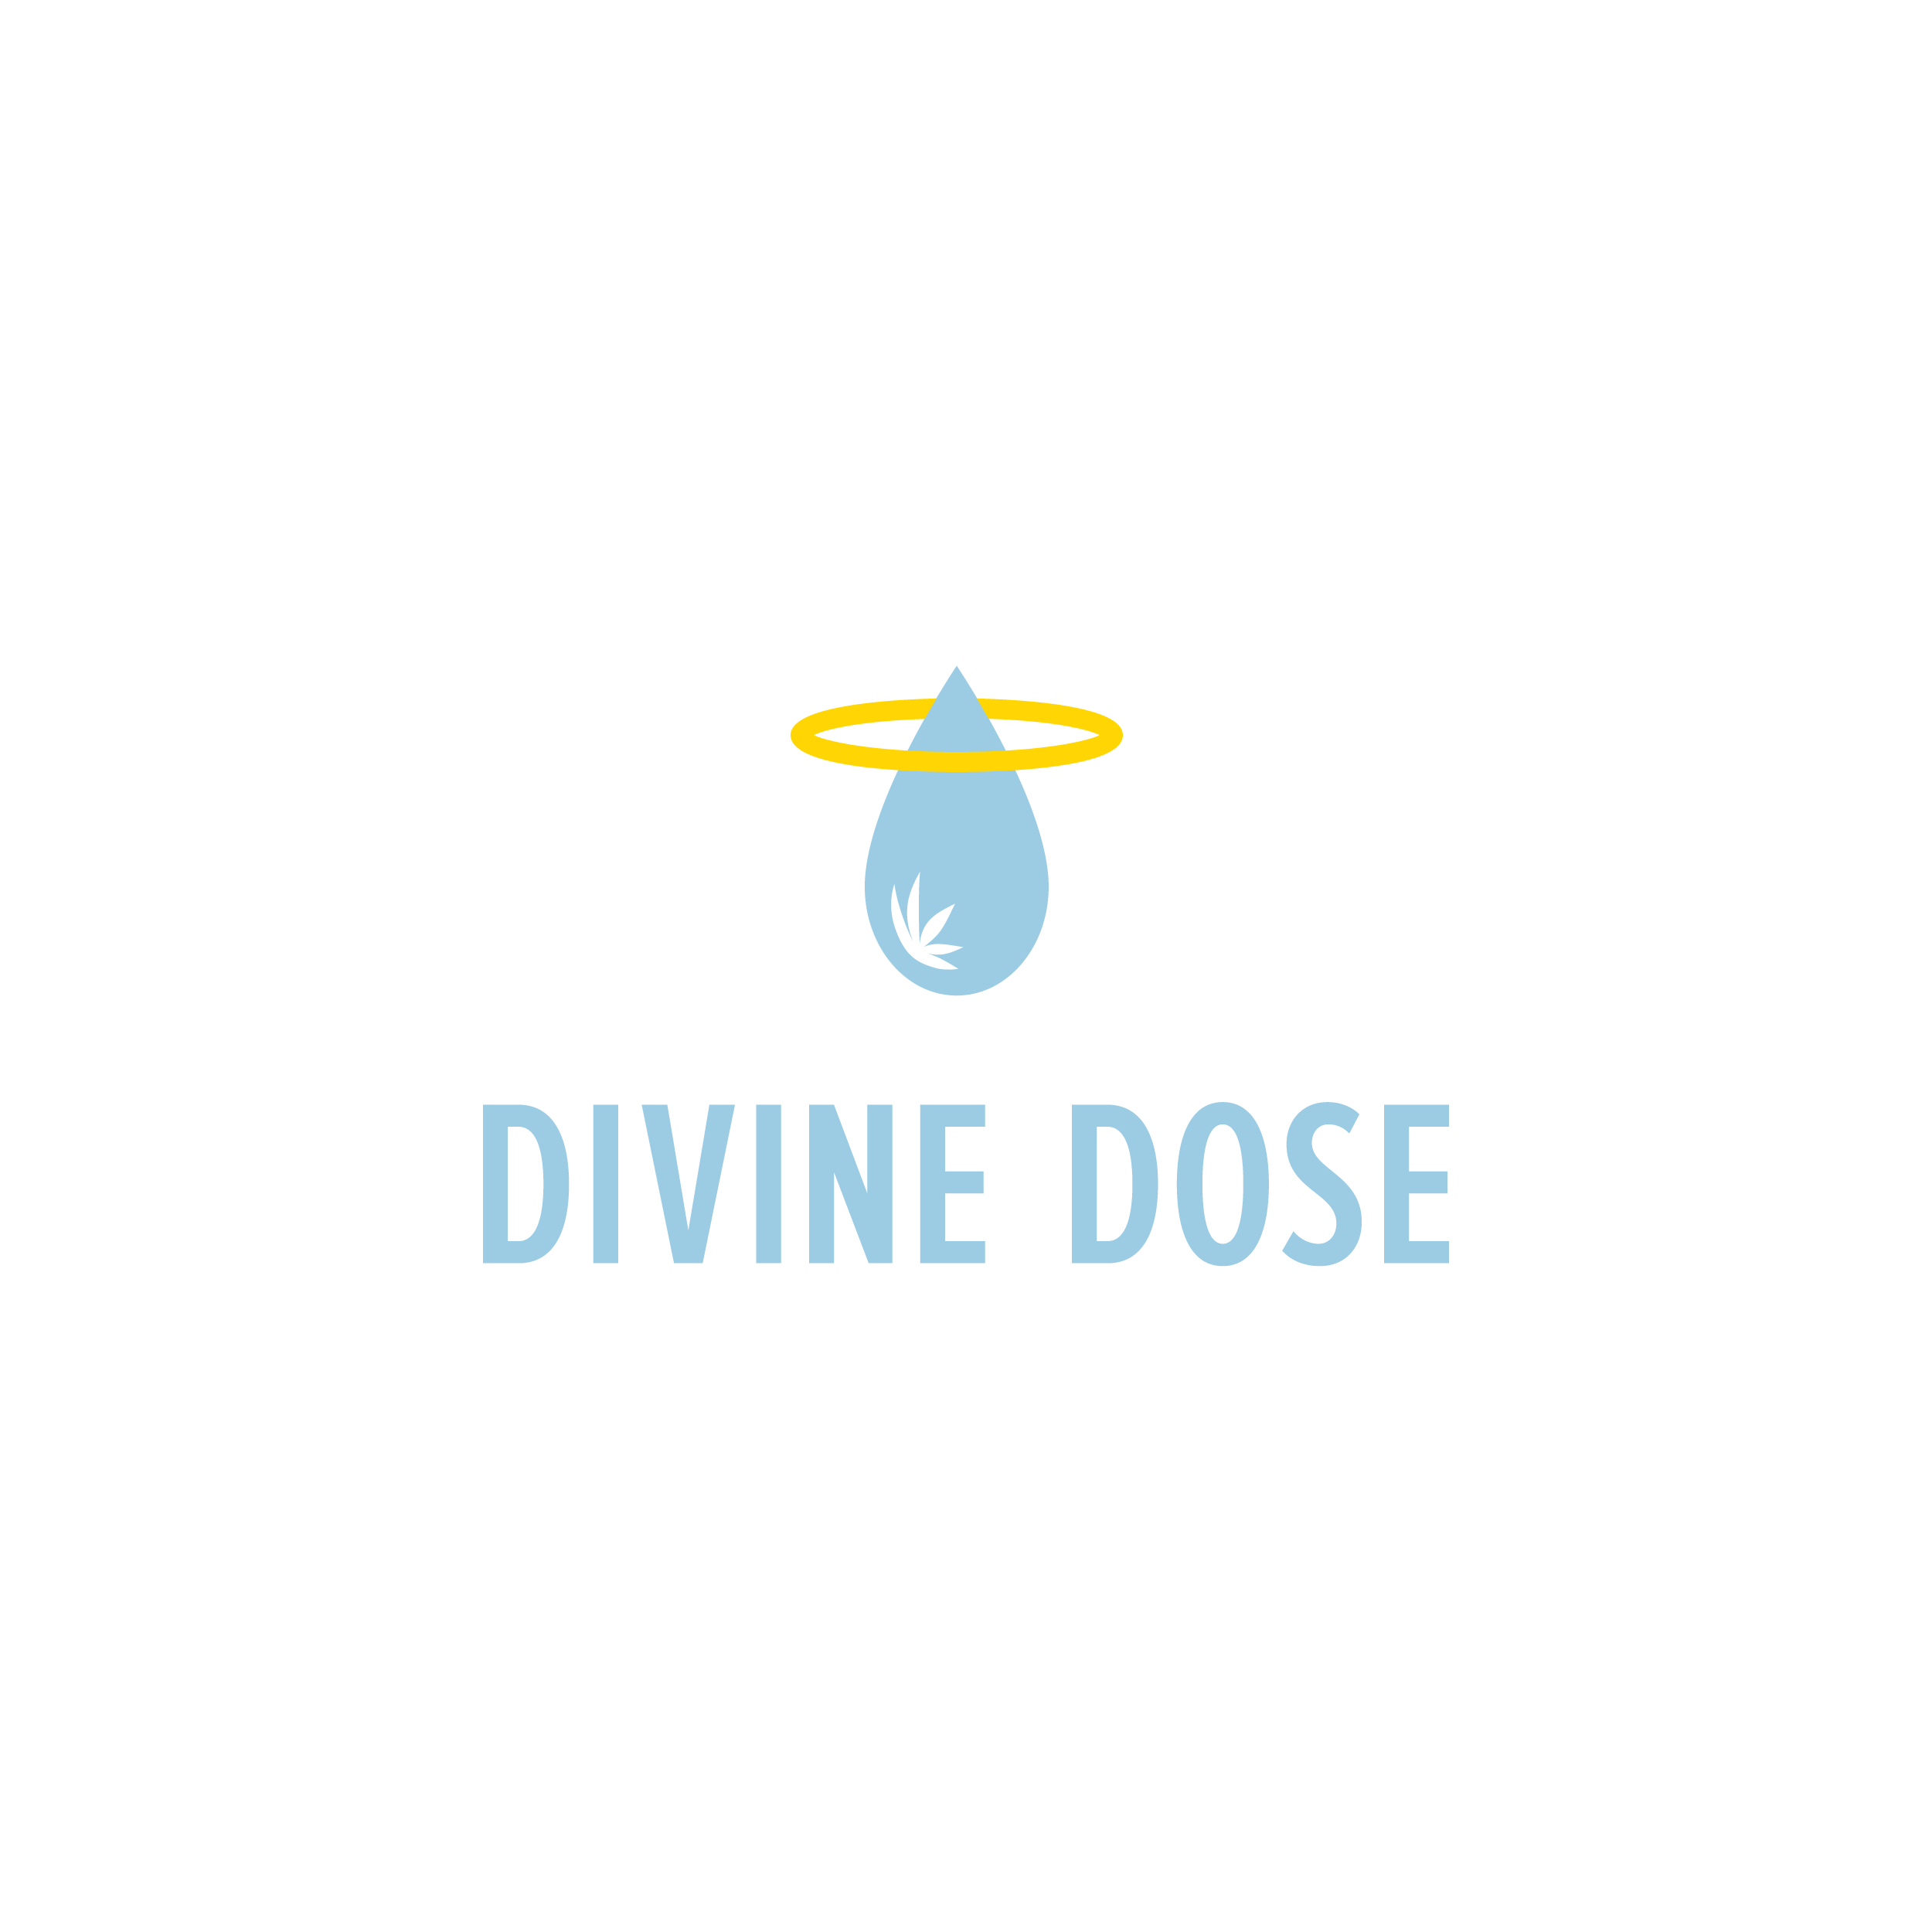 DivineDose_Logo_CMYK.png